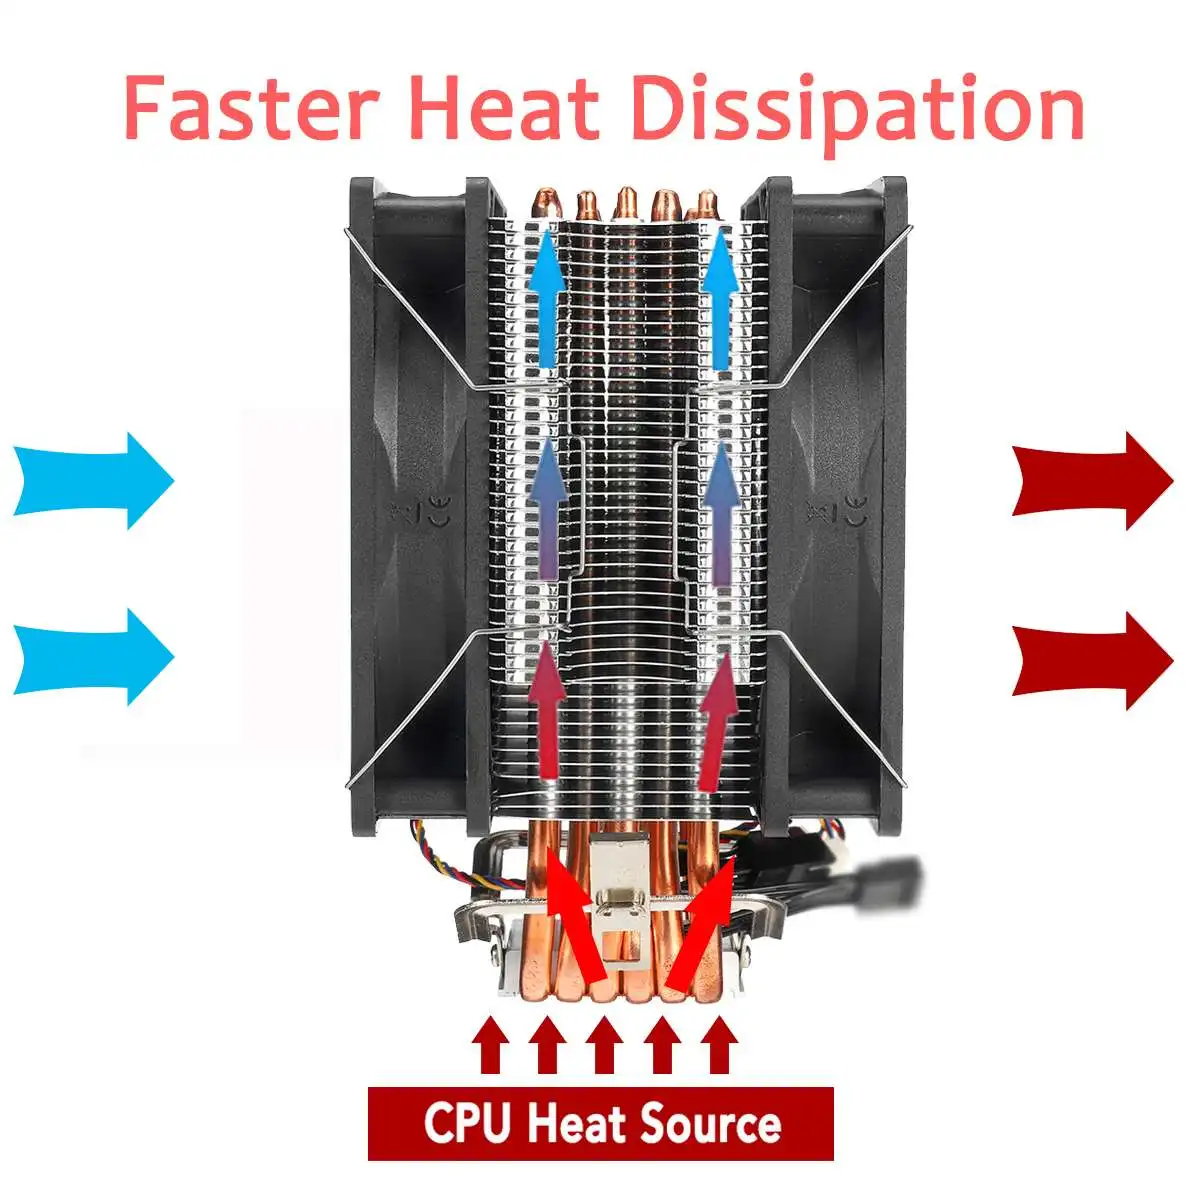 12 см двойной вентилятор Процессор радиатора 6 тепловых трубок Процессор охлаждающий вентилятор охлаждения кулер для LGA 1150/1151/1155/1156/1366/775 AMD